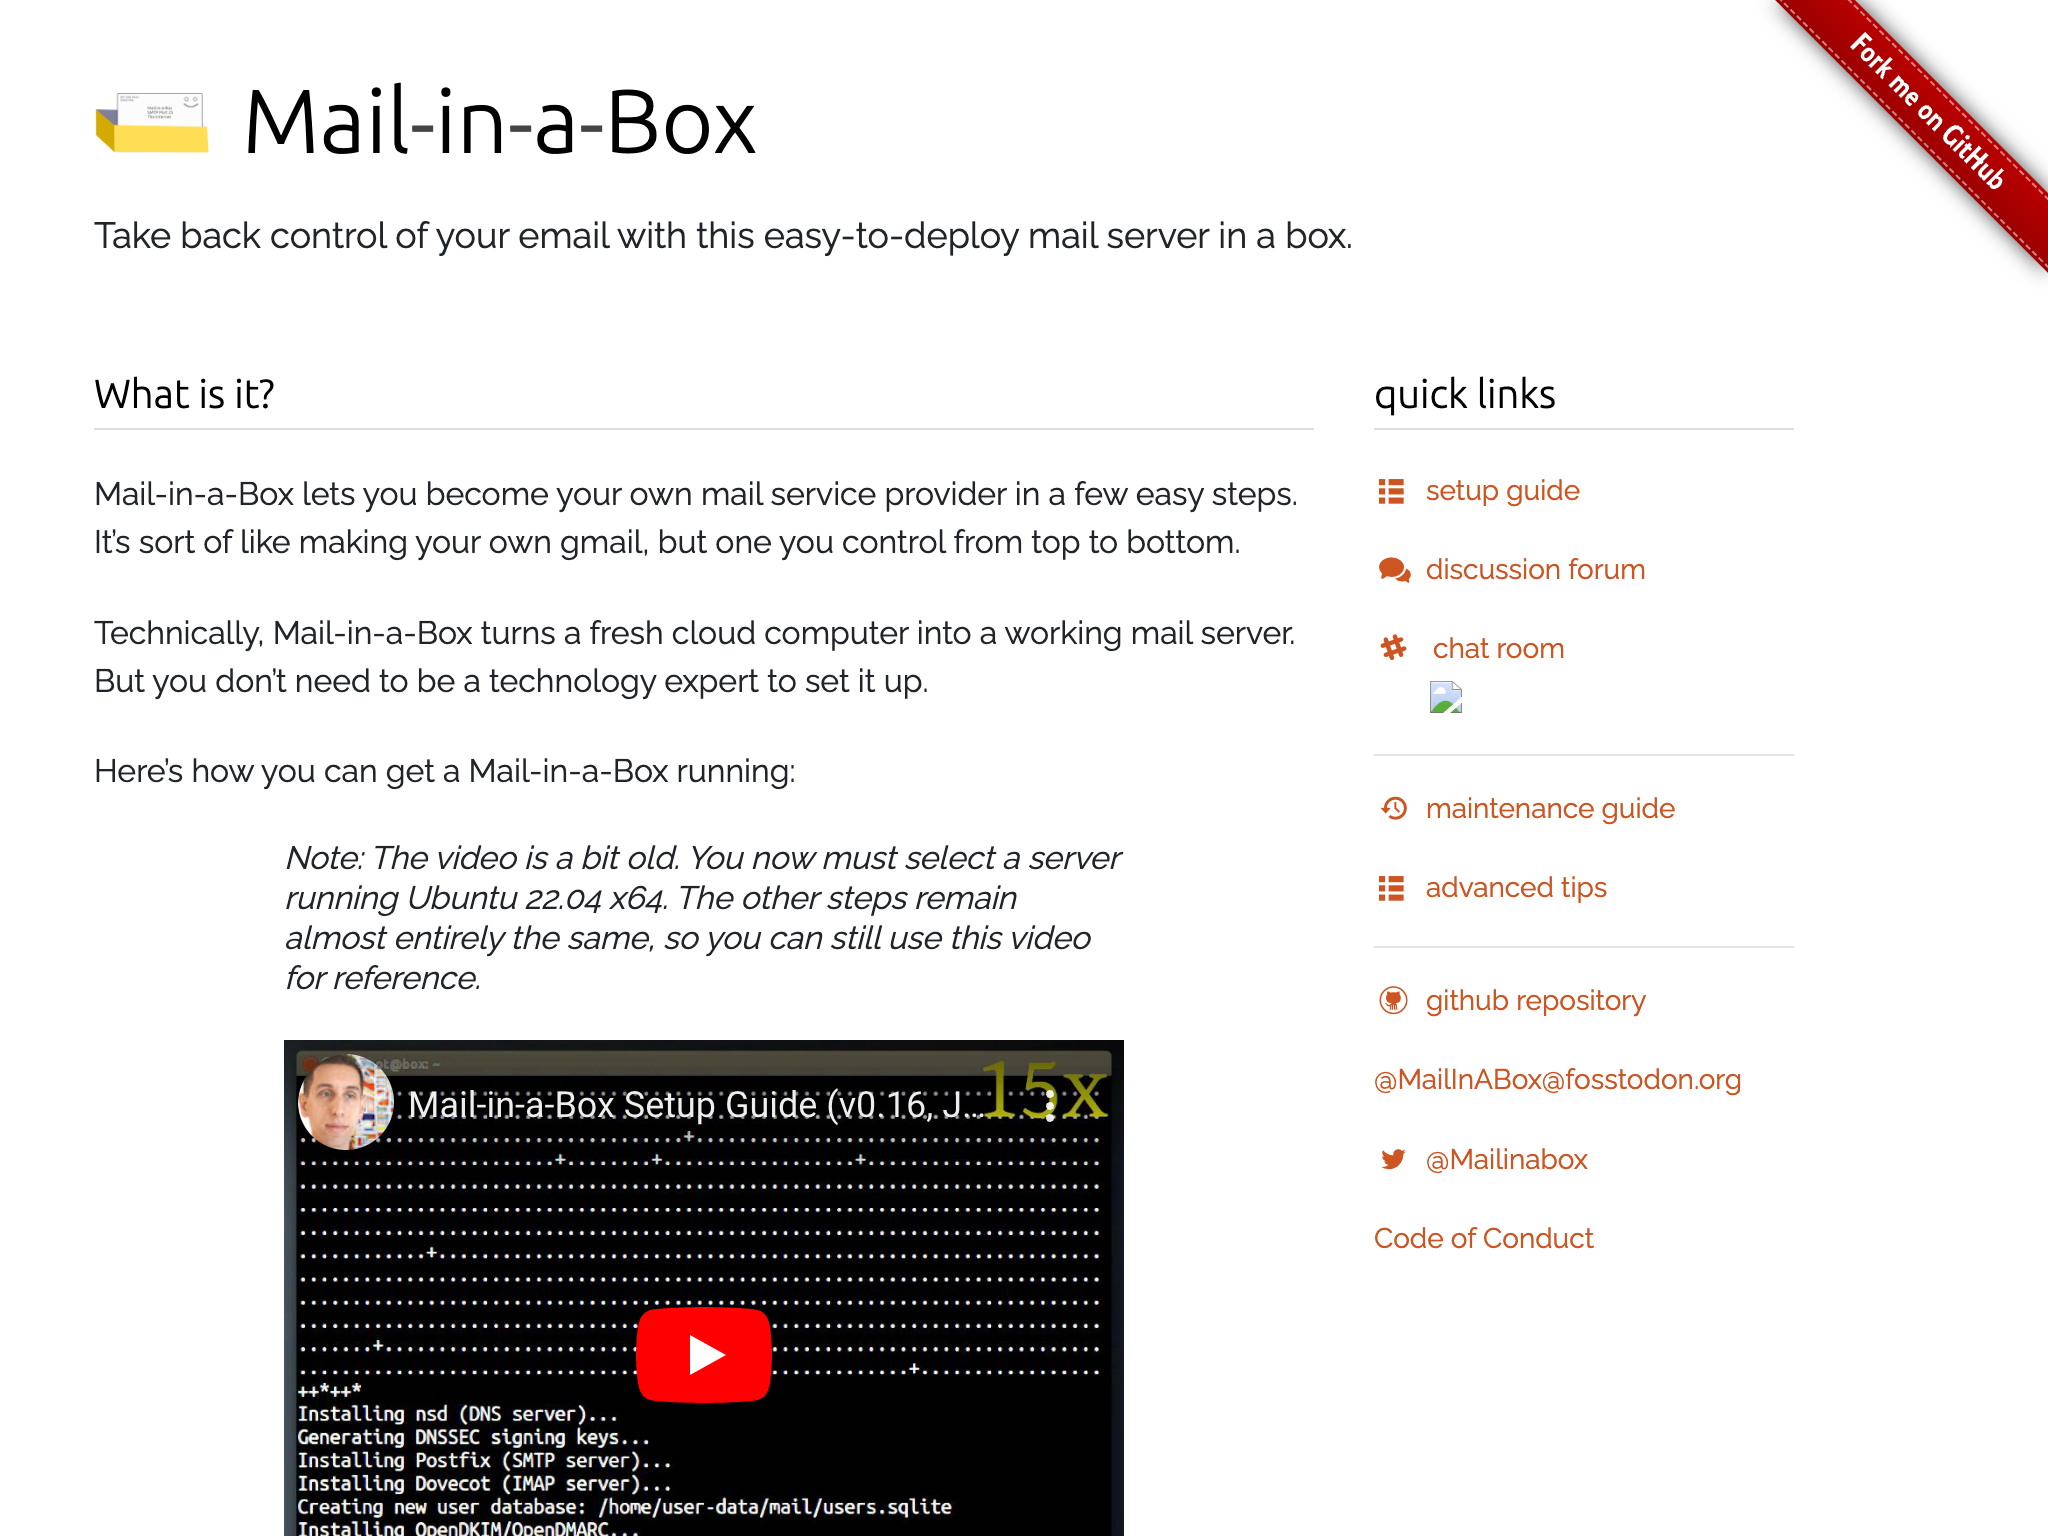 Mail-in-a-Box sunucu için açık kaynaklı Command-line (CLI) e-postasıdır.